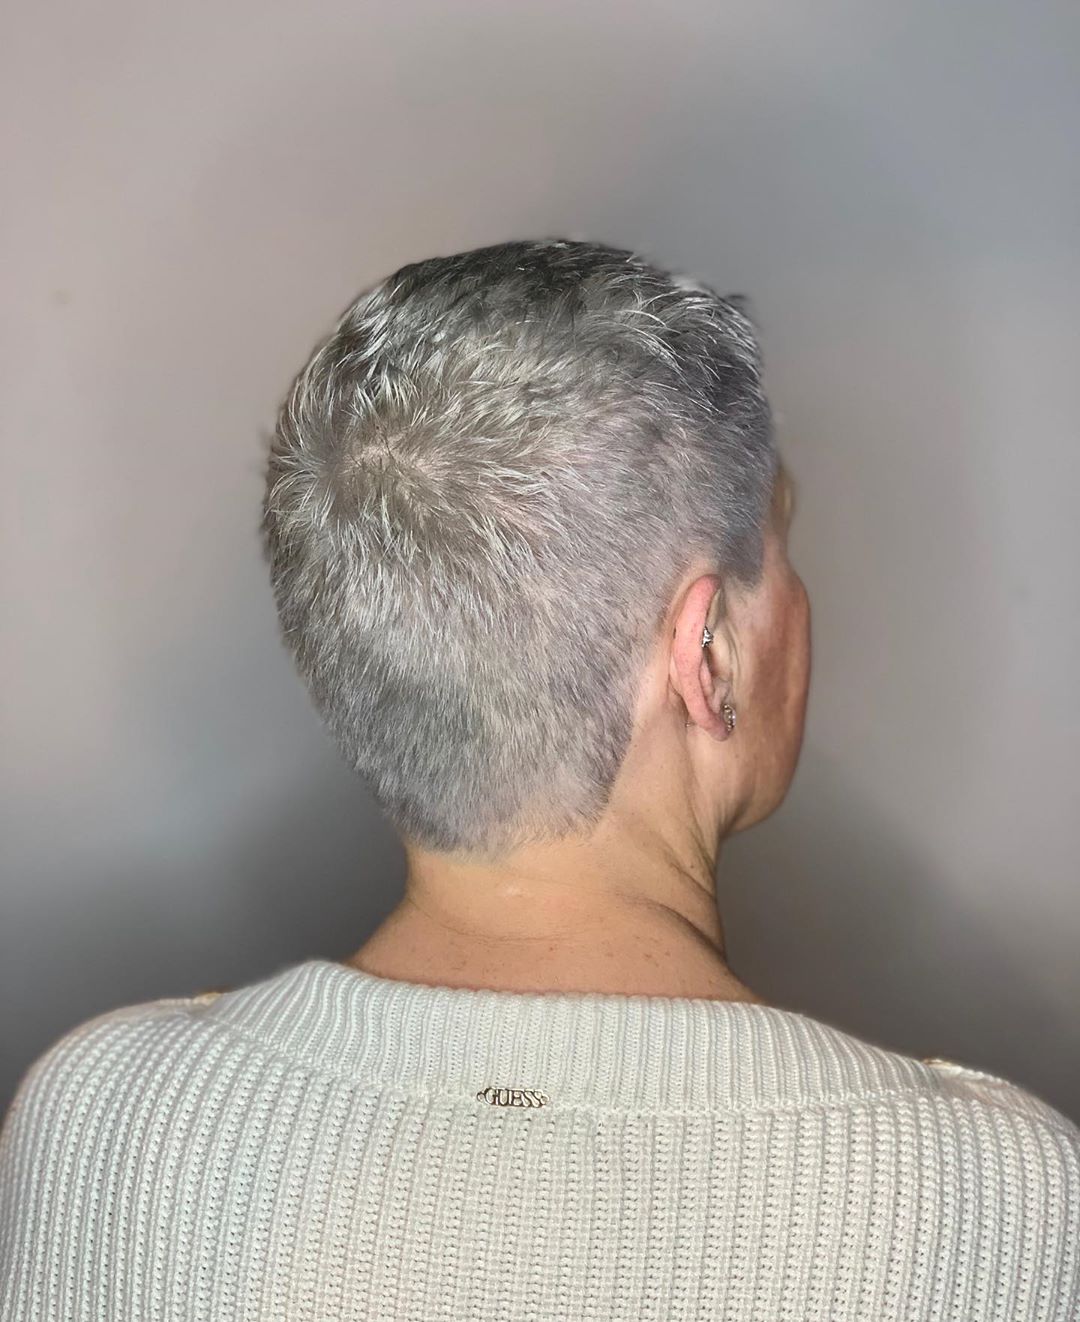 super short pixie haircut for older women over 50